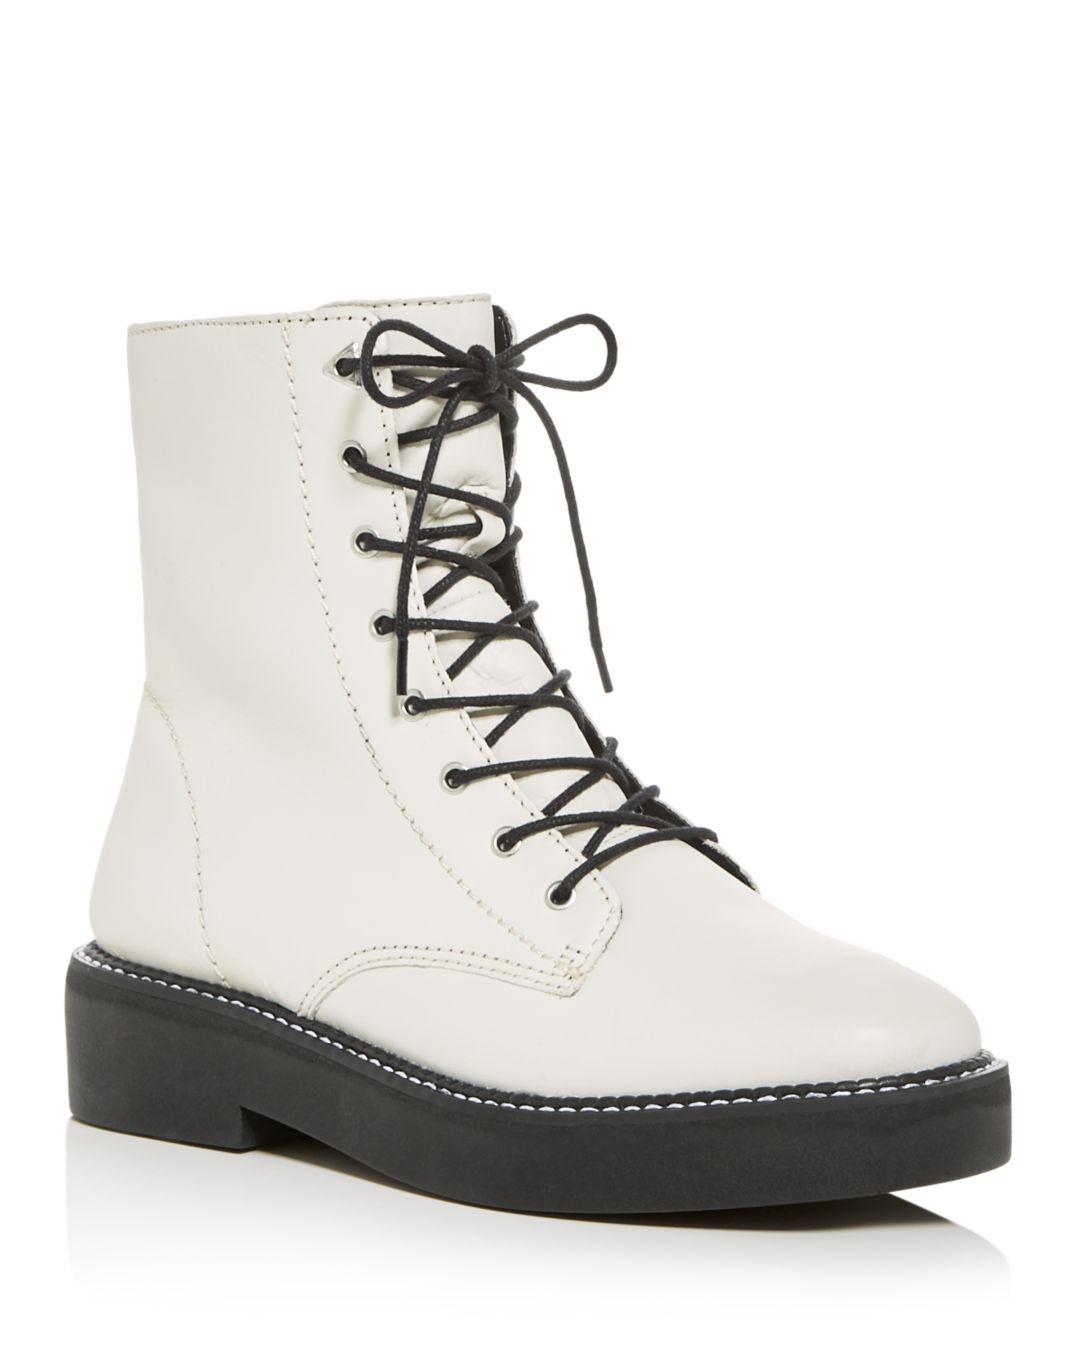 Schutz Leather Women's Mckenzie Combat Boots in Pearl (White) - Lyst